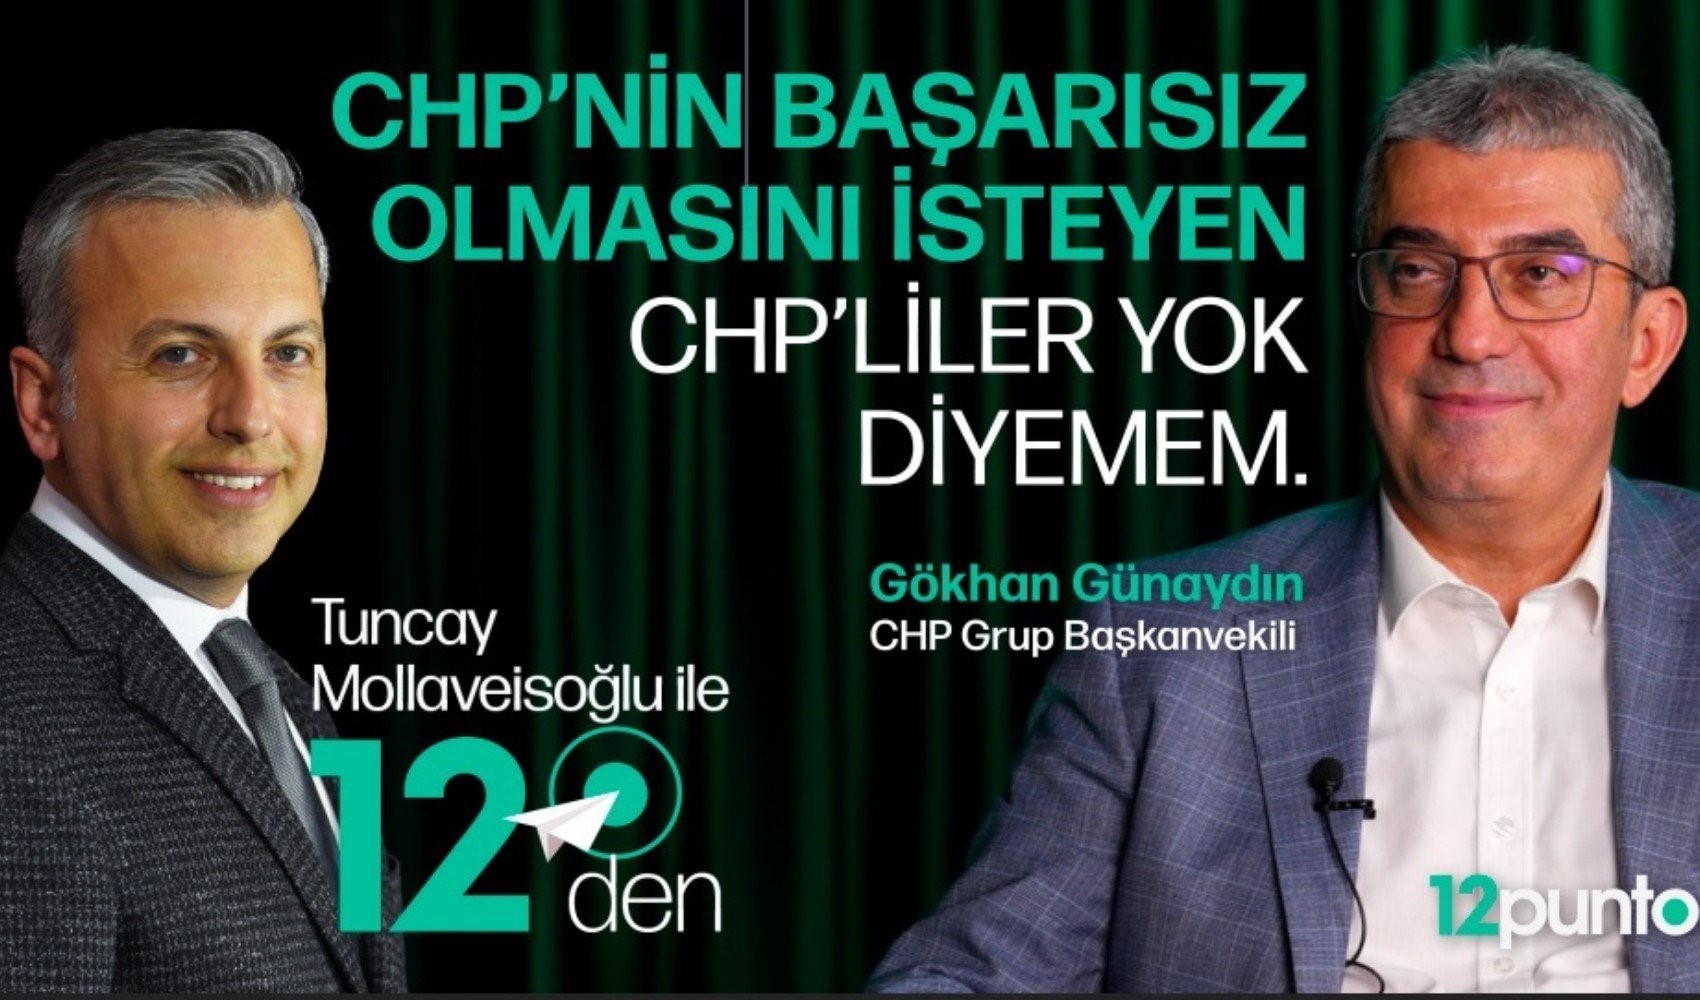 CHP Grup Başkanvekili Gökhan Günaydın’dan Tuncay Mollaveisoğlu’na çarpıcı açıklamalar! 31 Mart'tan sonra CHP'de kurultay var mı?